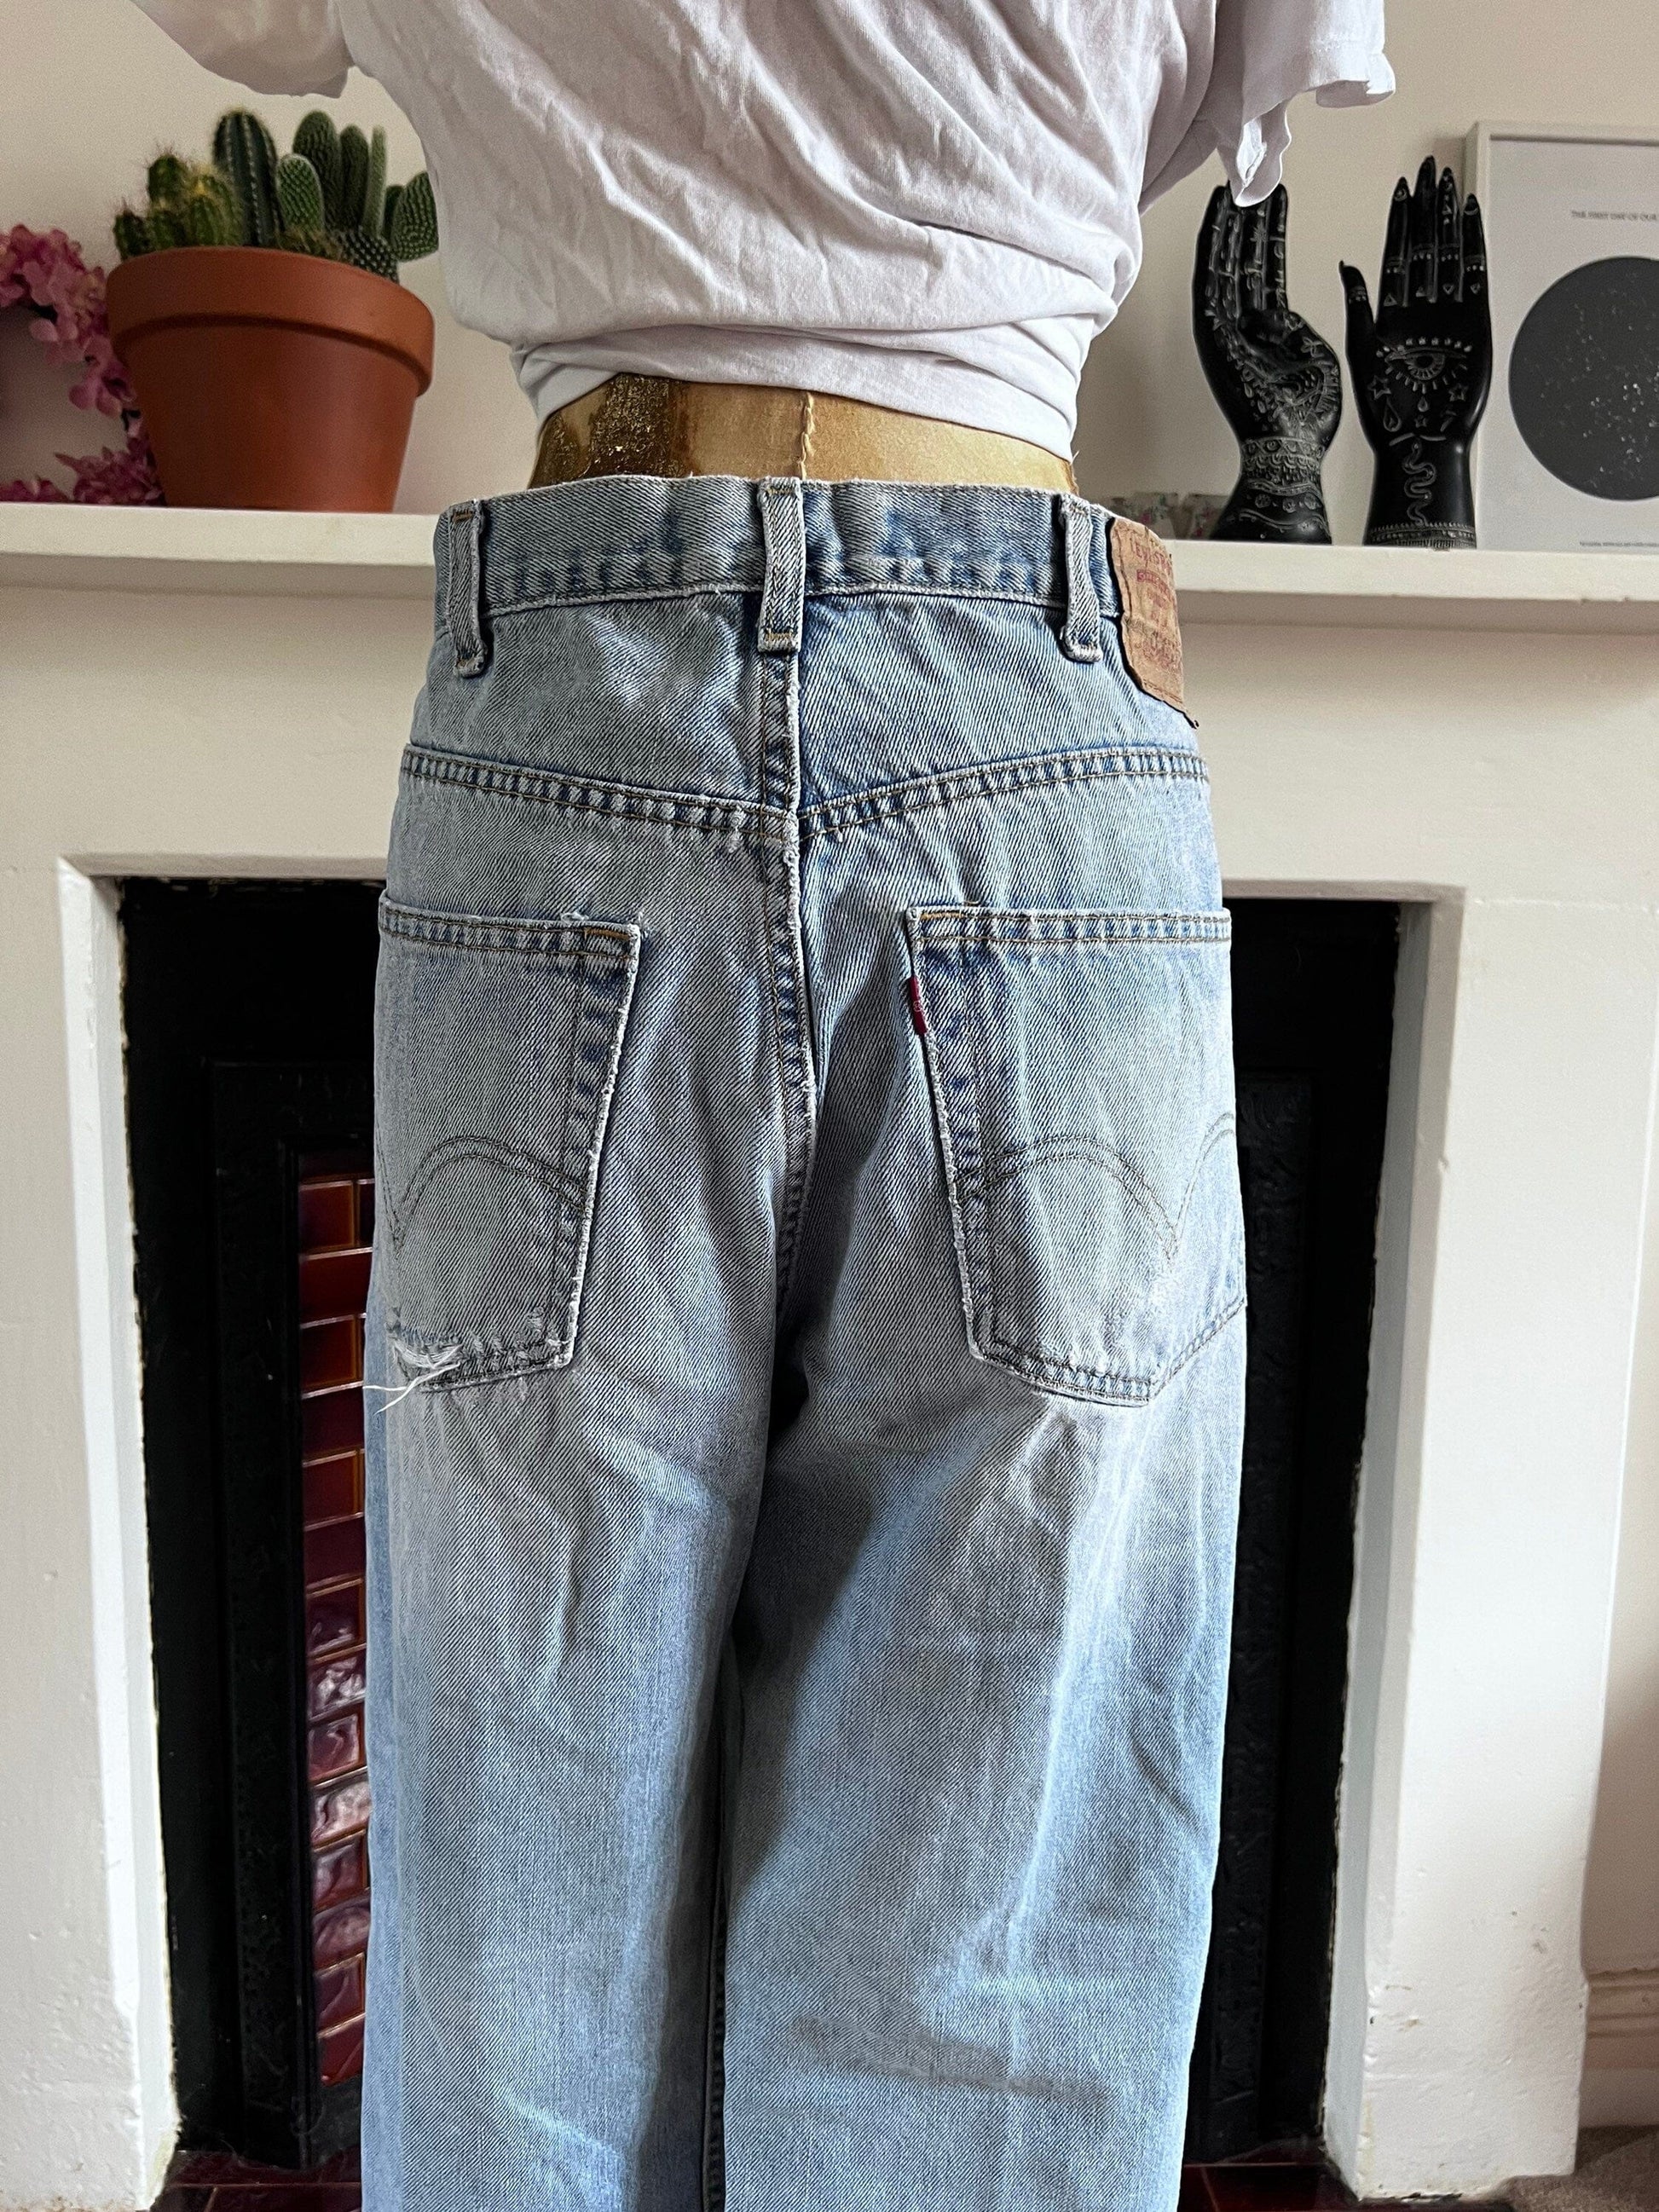 Vintage Levi Jeans Relaxed Fit - light stone wash denim jeans  - Levi Jeans 550 W 38 L32